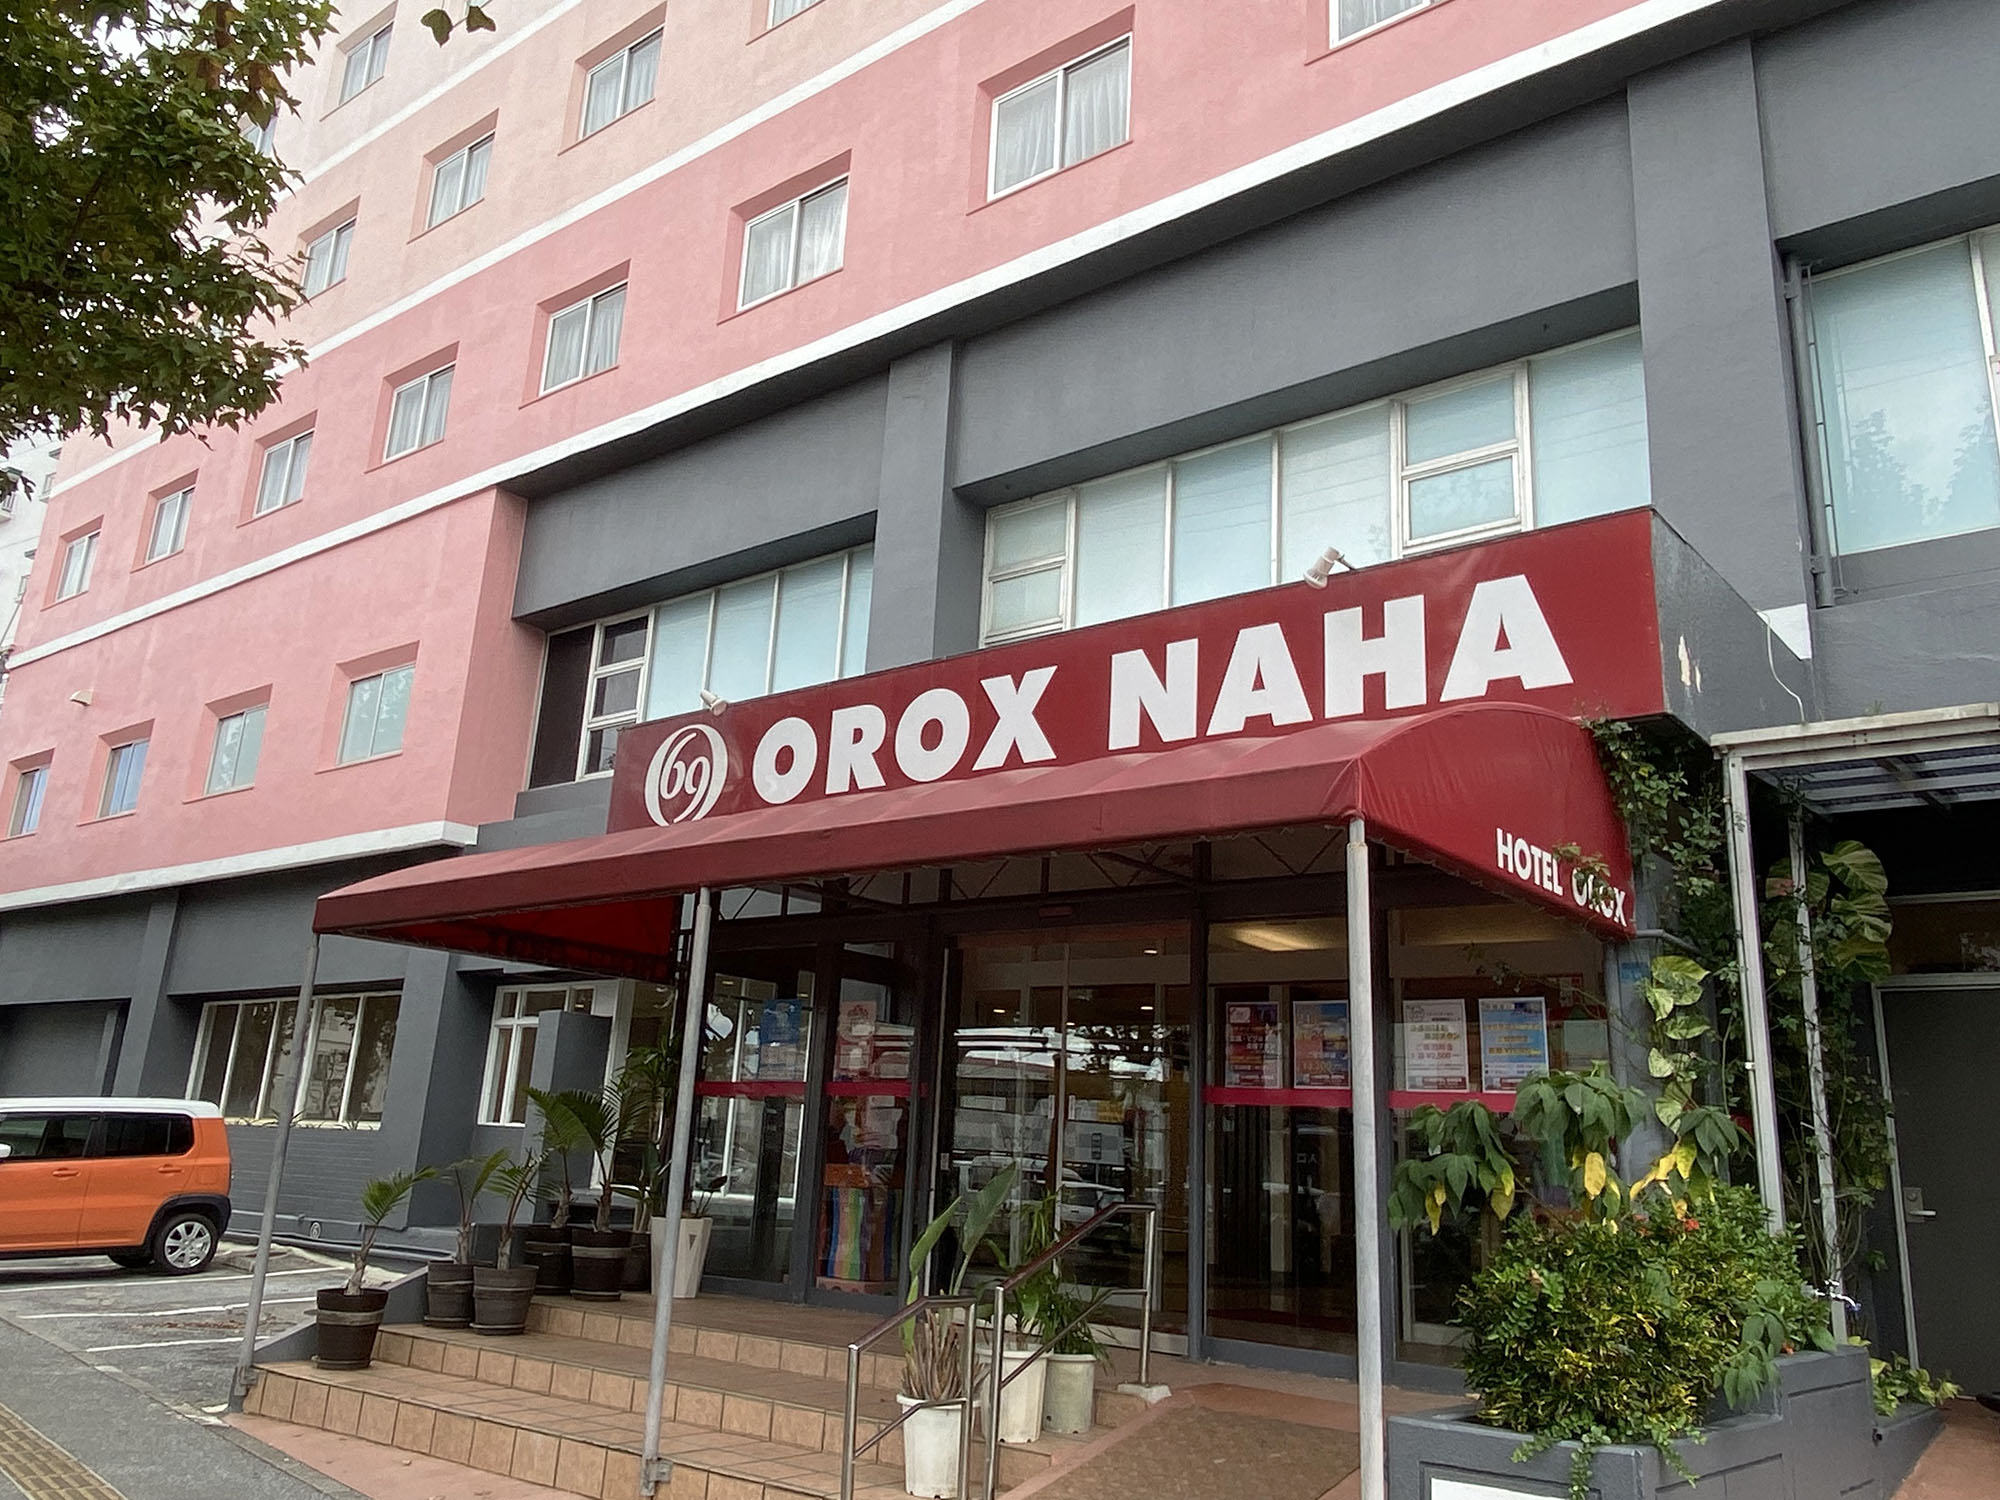 地元に愛されるホテルを目指してます！『HOTEL OROX（ホテル オロックス）』｜那覇市小禄